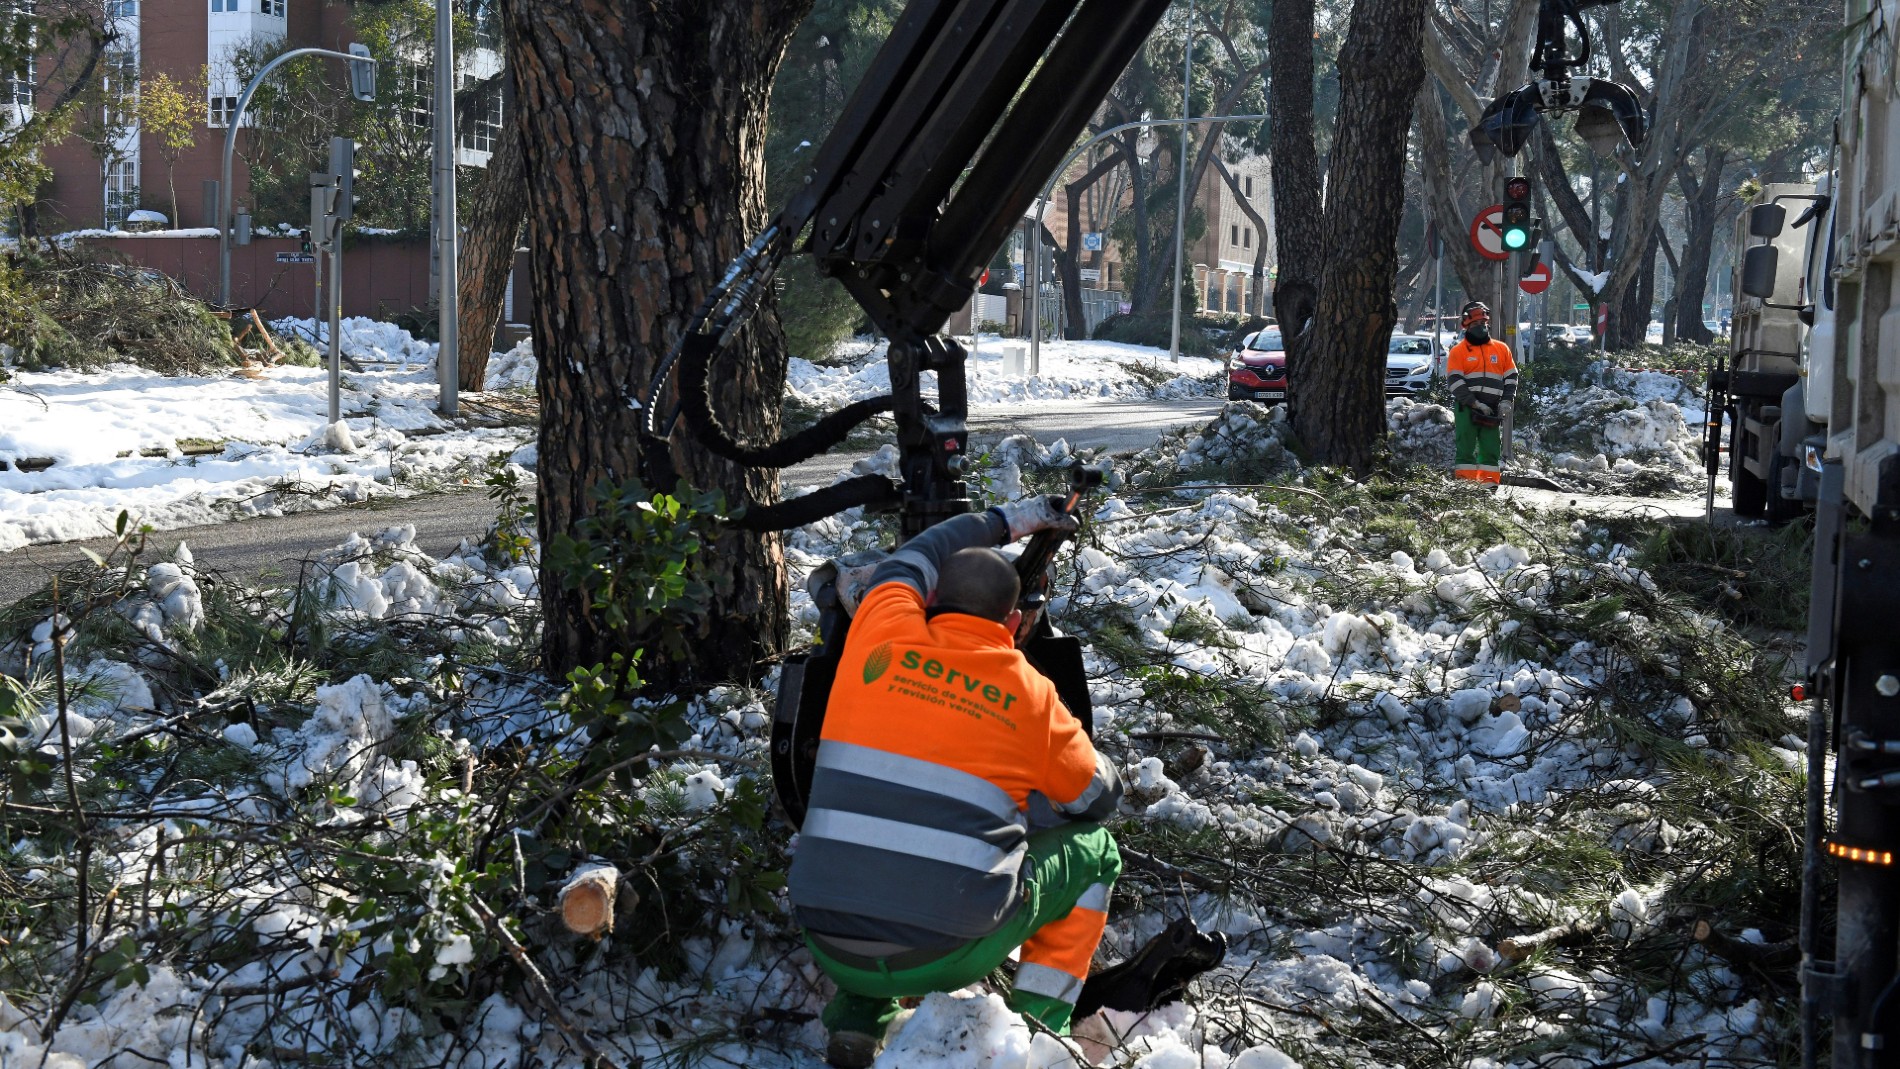 Temporal, en directo  Más de la mitad de las calles de Madrid siguen  afectadas por la nieve y el hielo diez días después